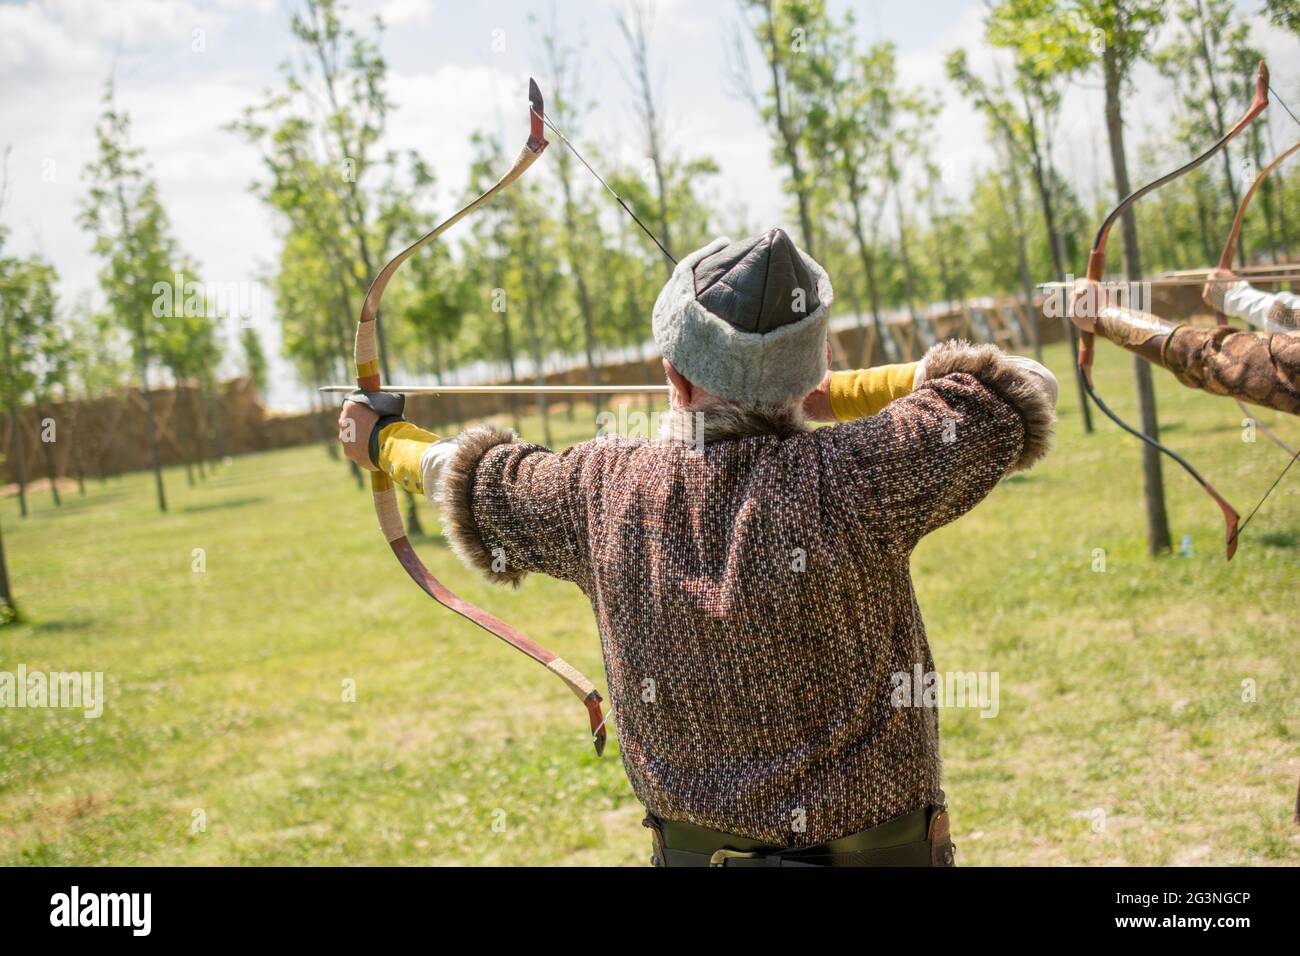 Bogenschütze in traditioneller Kleidung, die einen Pfeil schießt Stockfoto